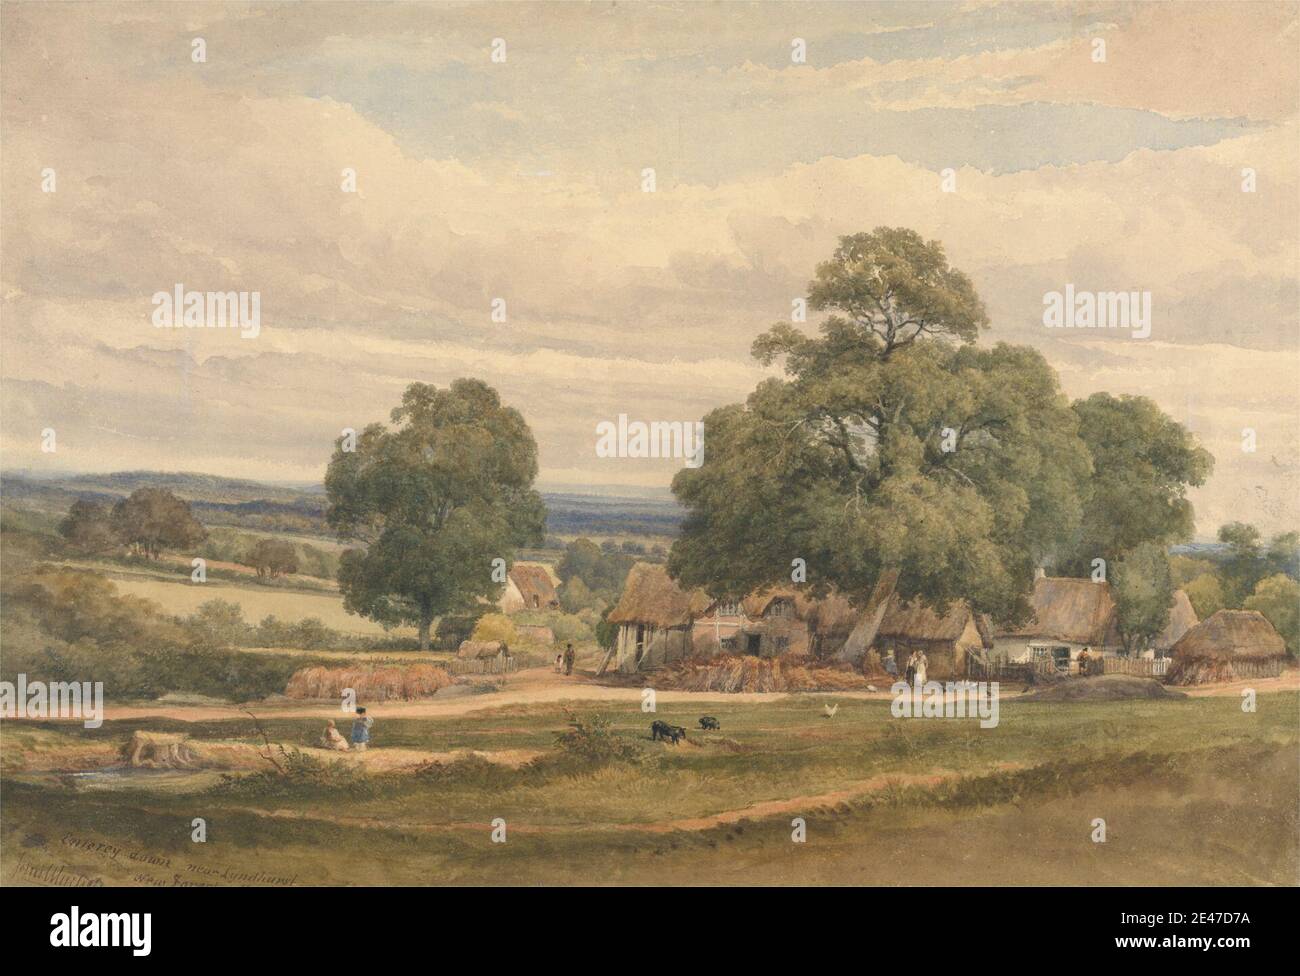 C. John M. Whichelo, 1784–1865, britisch, Emerey Down near Lyndhurst, New Forest, Hants, undated. Aquarell und Graphit auf mittelschwerem, leicht strukturiertem, cremefarbenen Papier. Public Domain Stockfoto